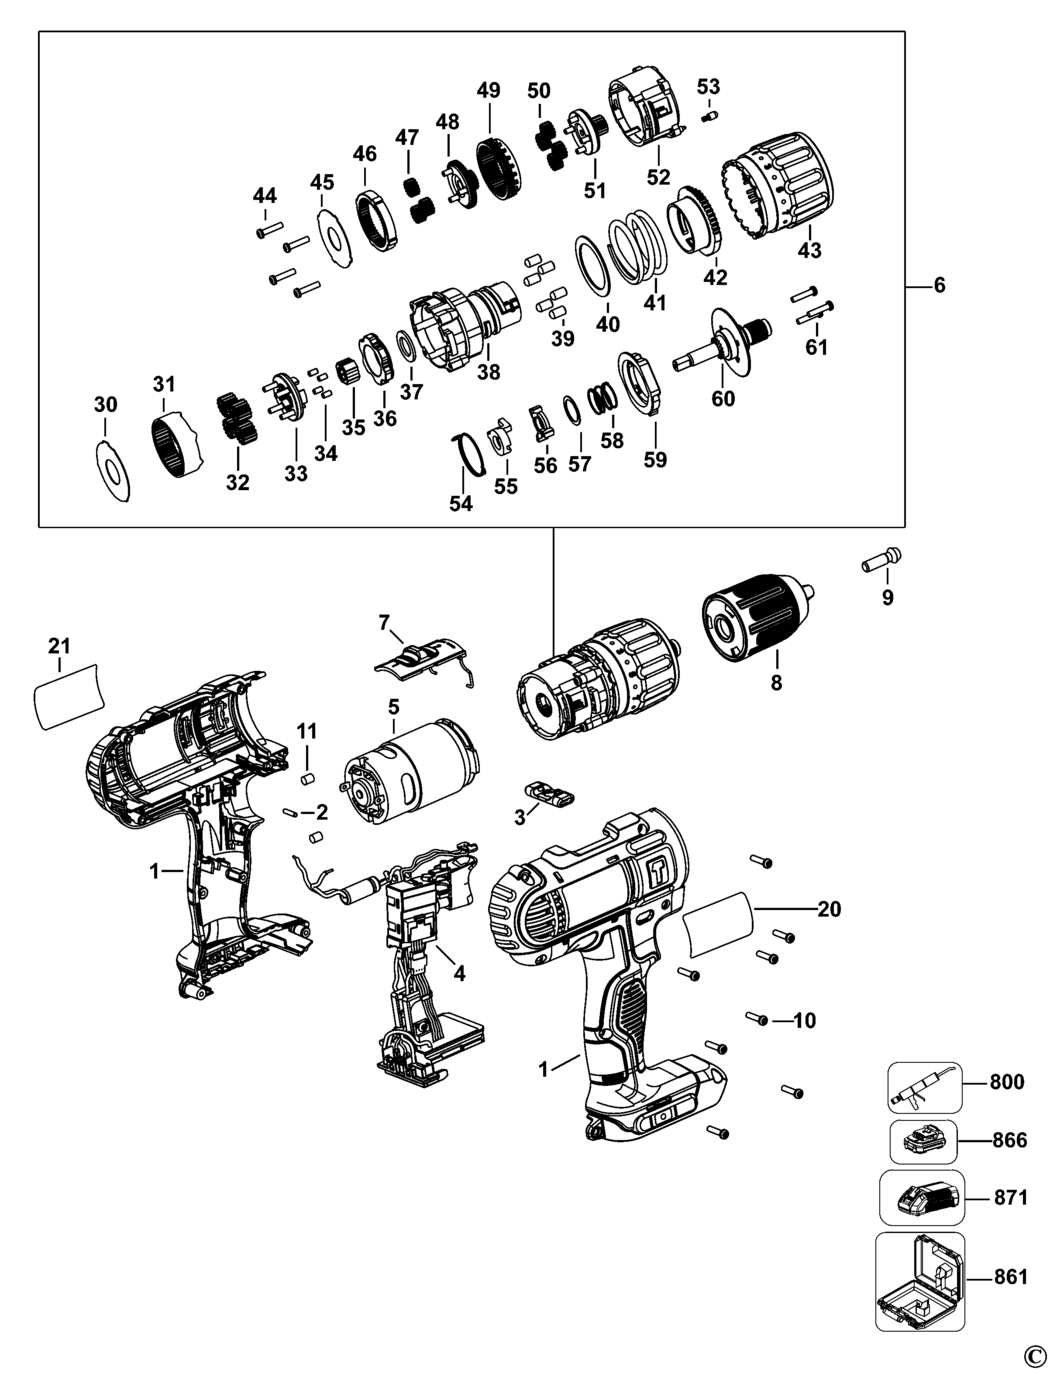 Dewalt DCD776 Type 20 Cordless Drill Spare Parts